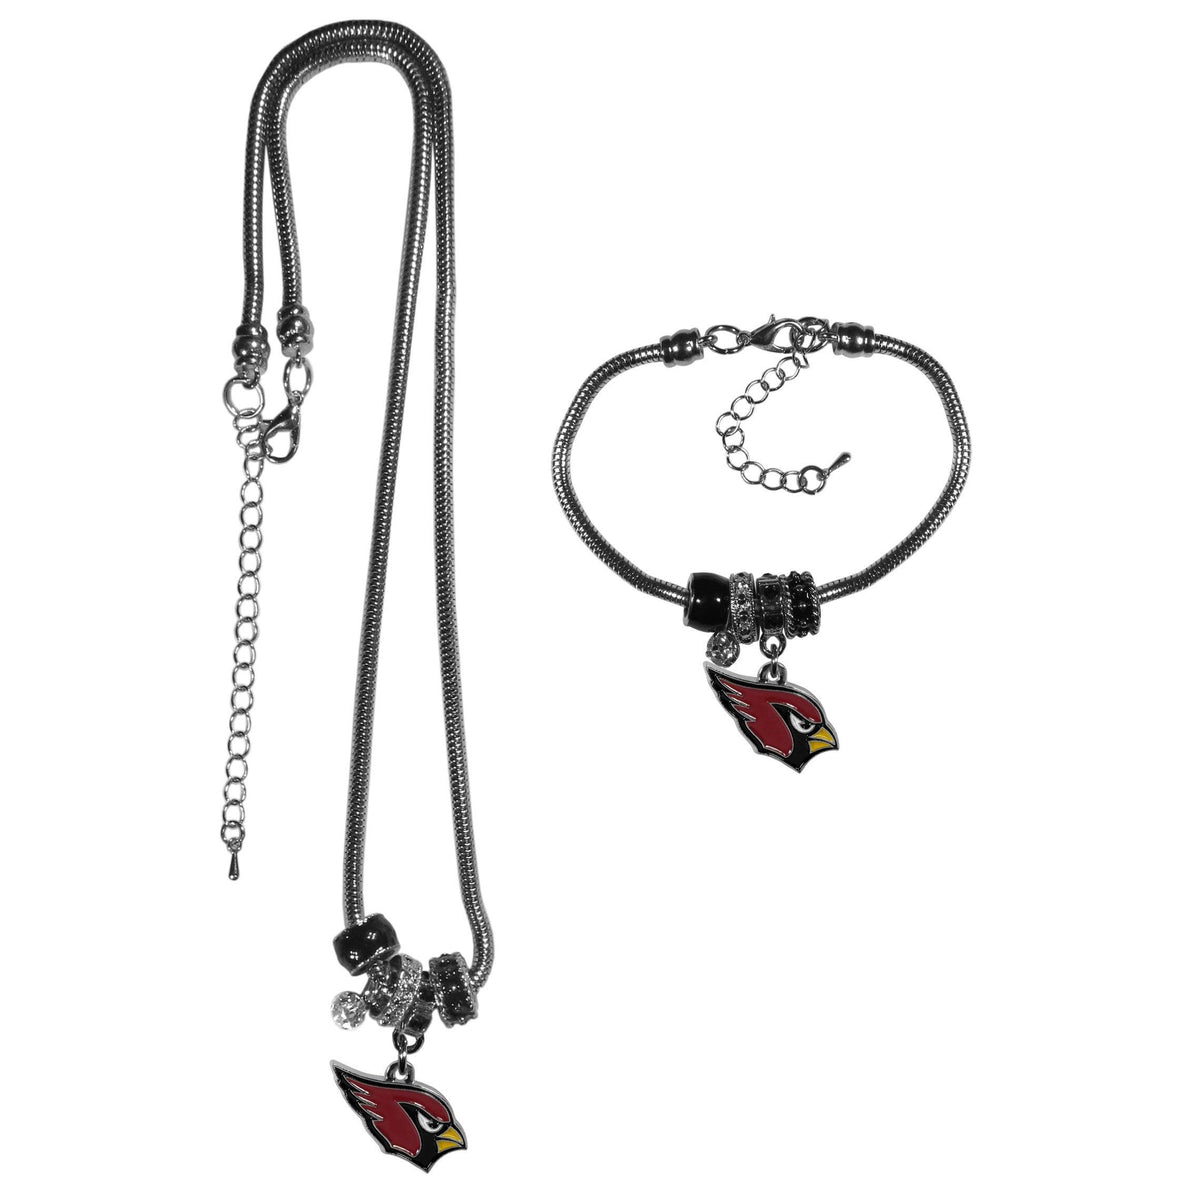 Arizona Cardinals Euro Bead Necklace and Bracelet Set - Flyclothing LLC